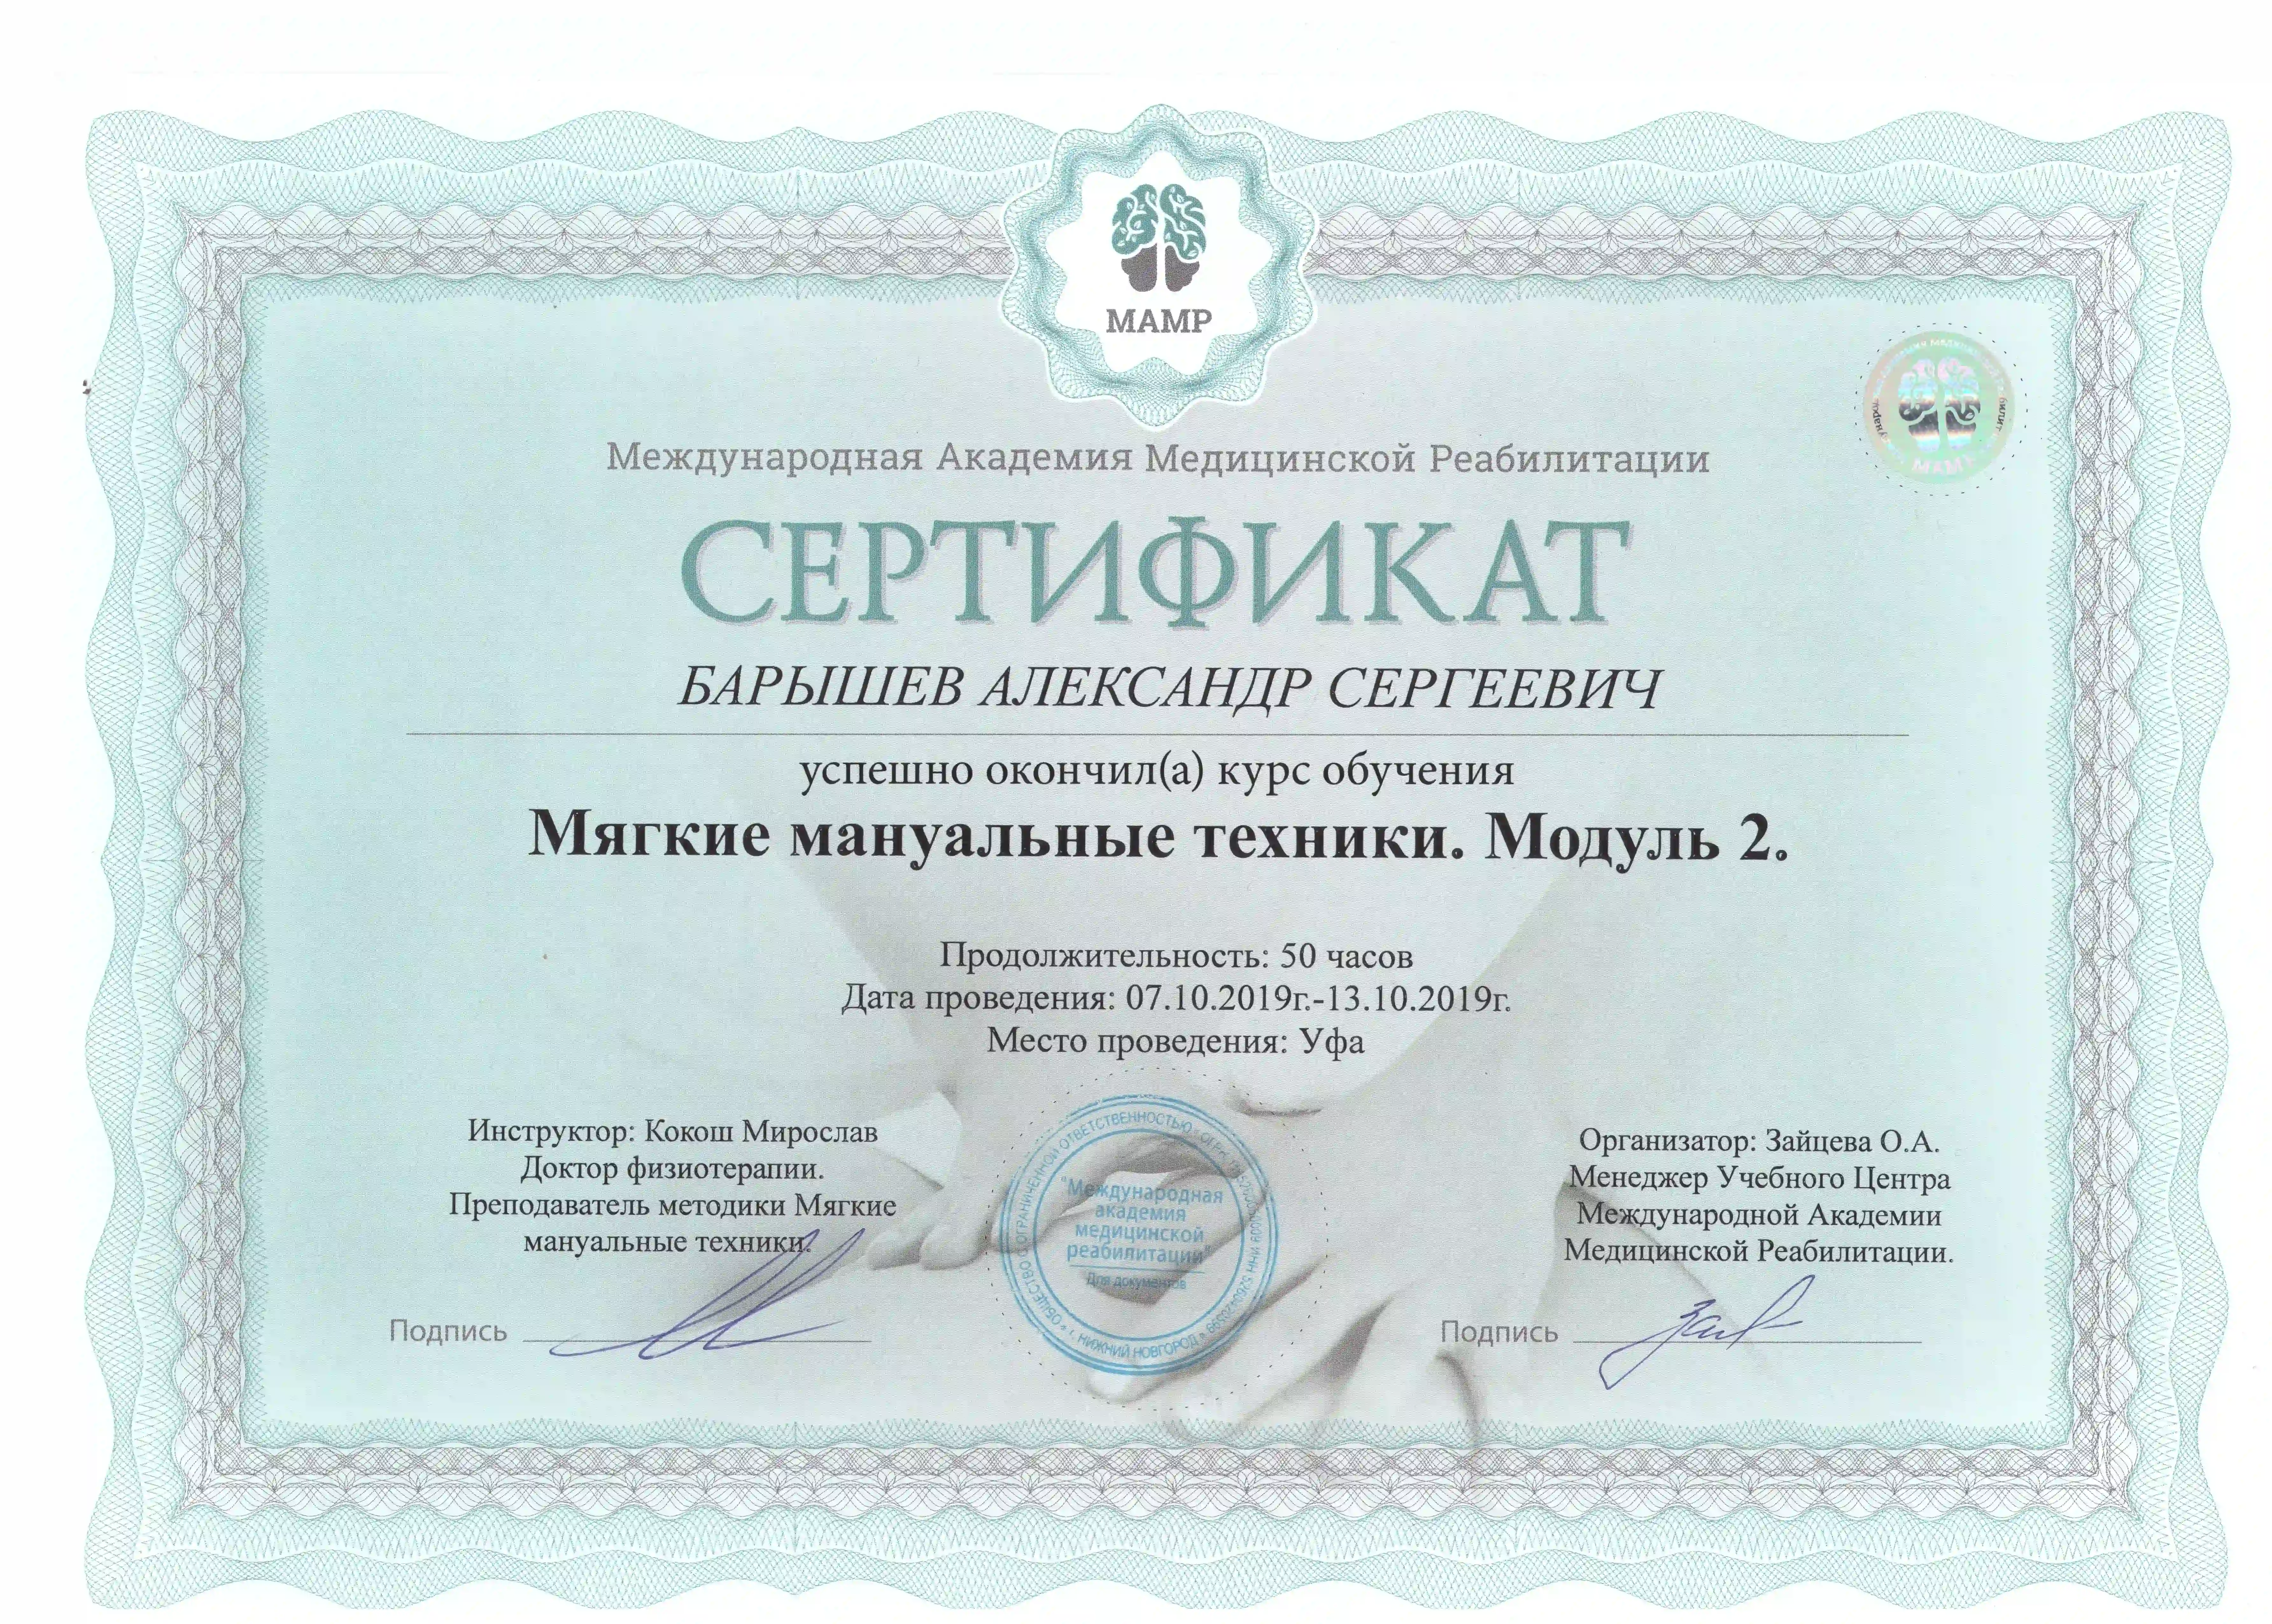 Сертификат по мягким мануальным техникам